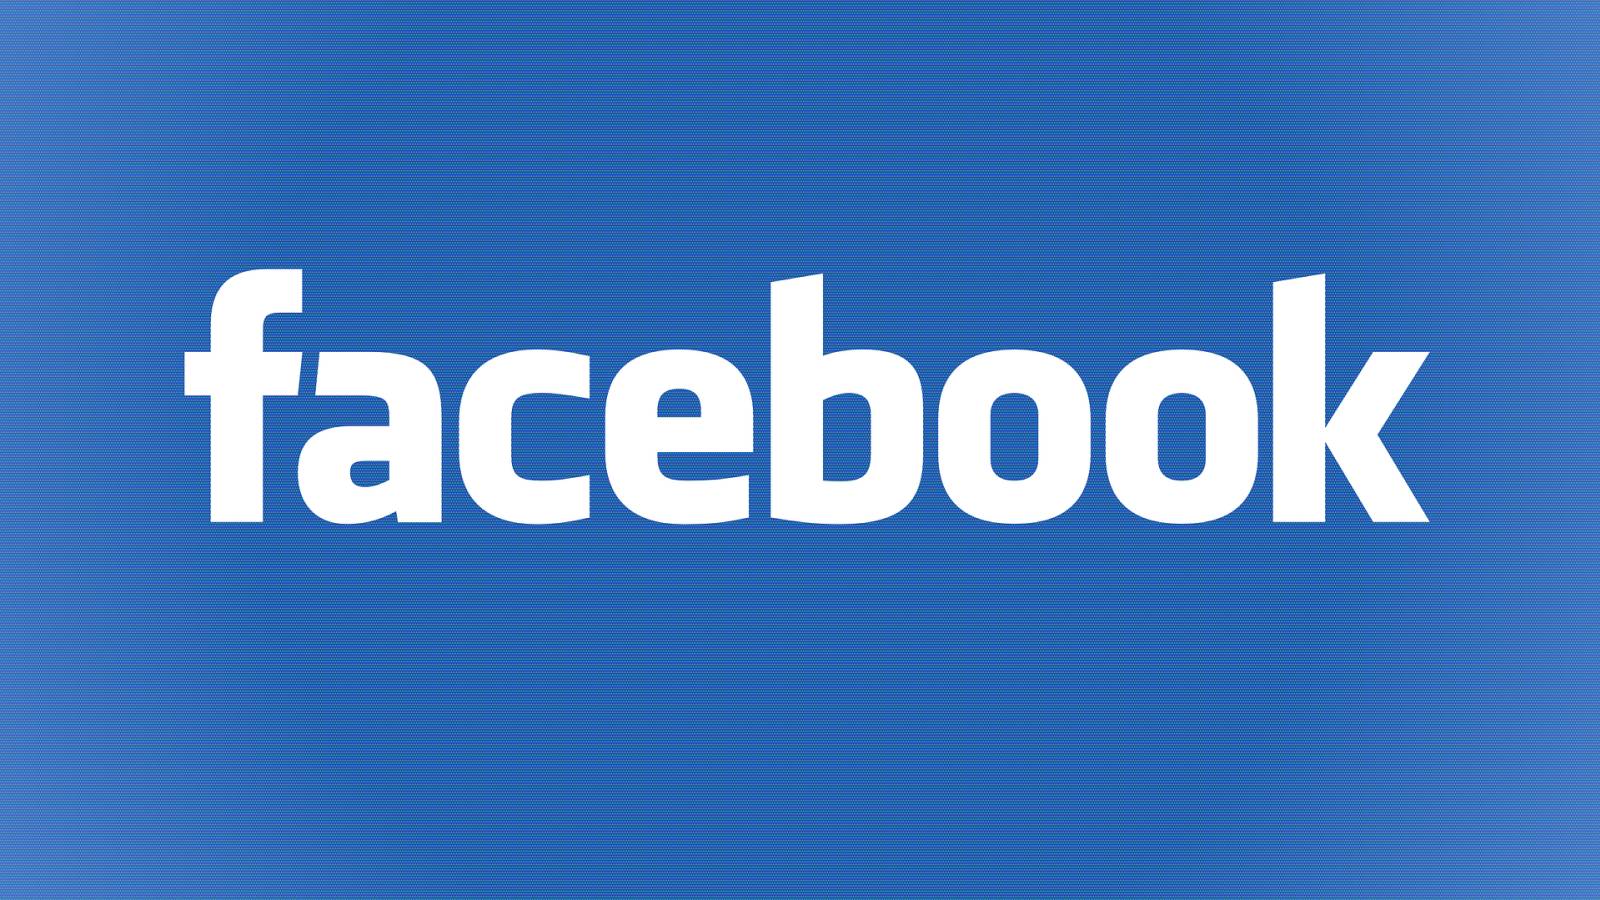 Facebook Update este Acum Disponibil pentru Telefoane si Tablete, Iata Noutatile